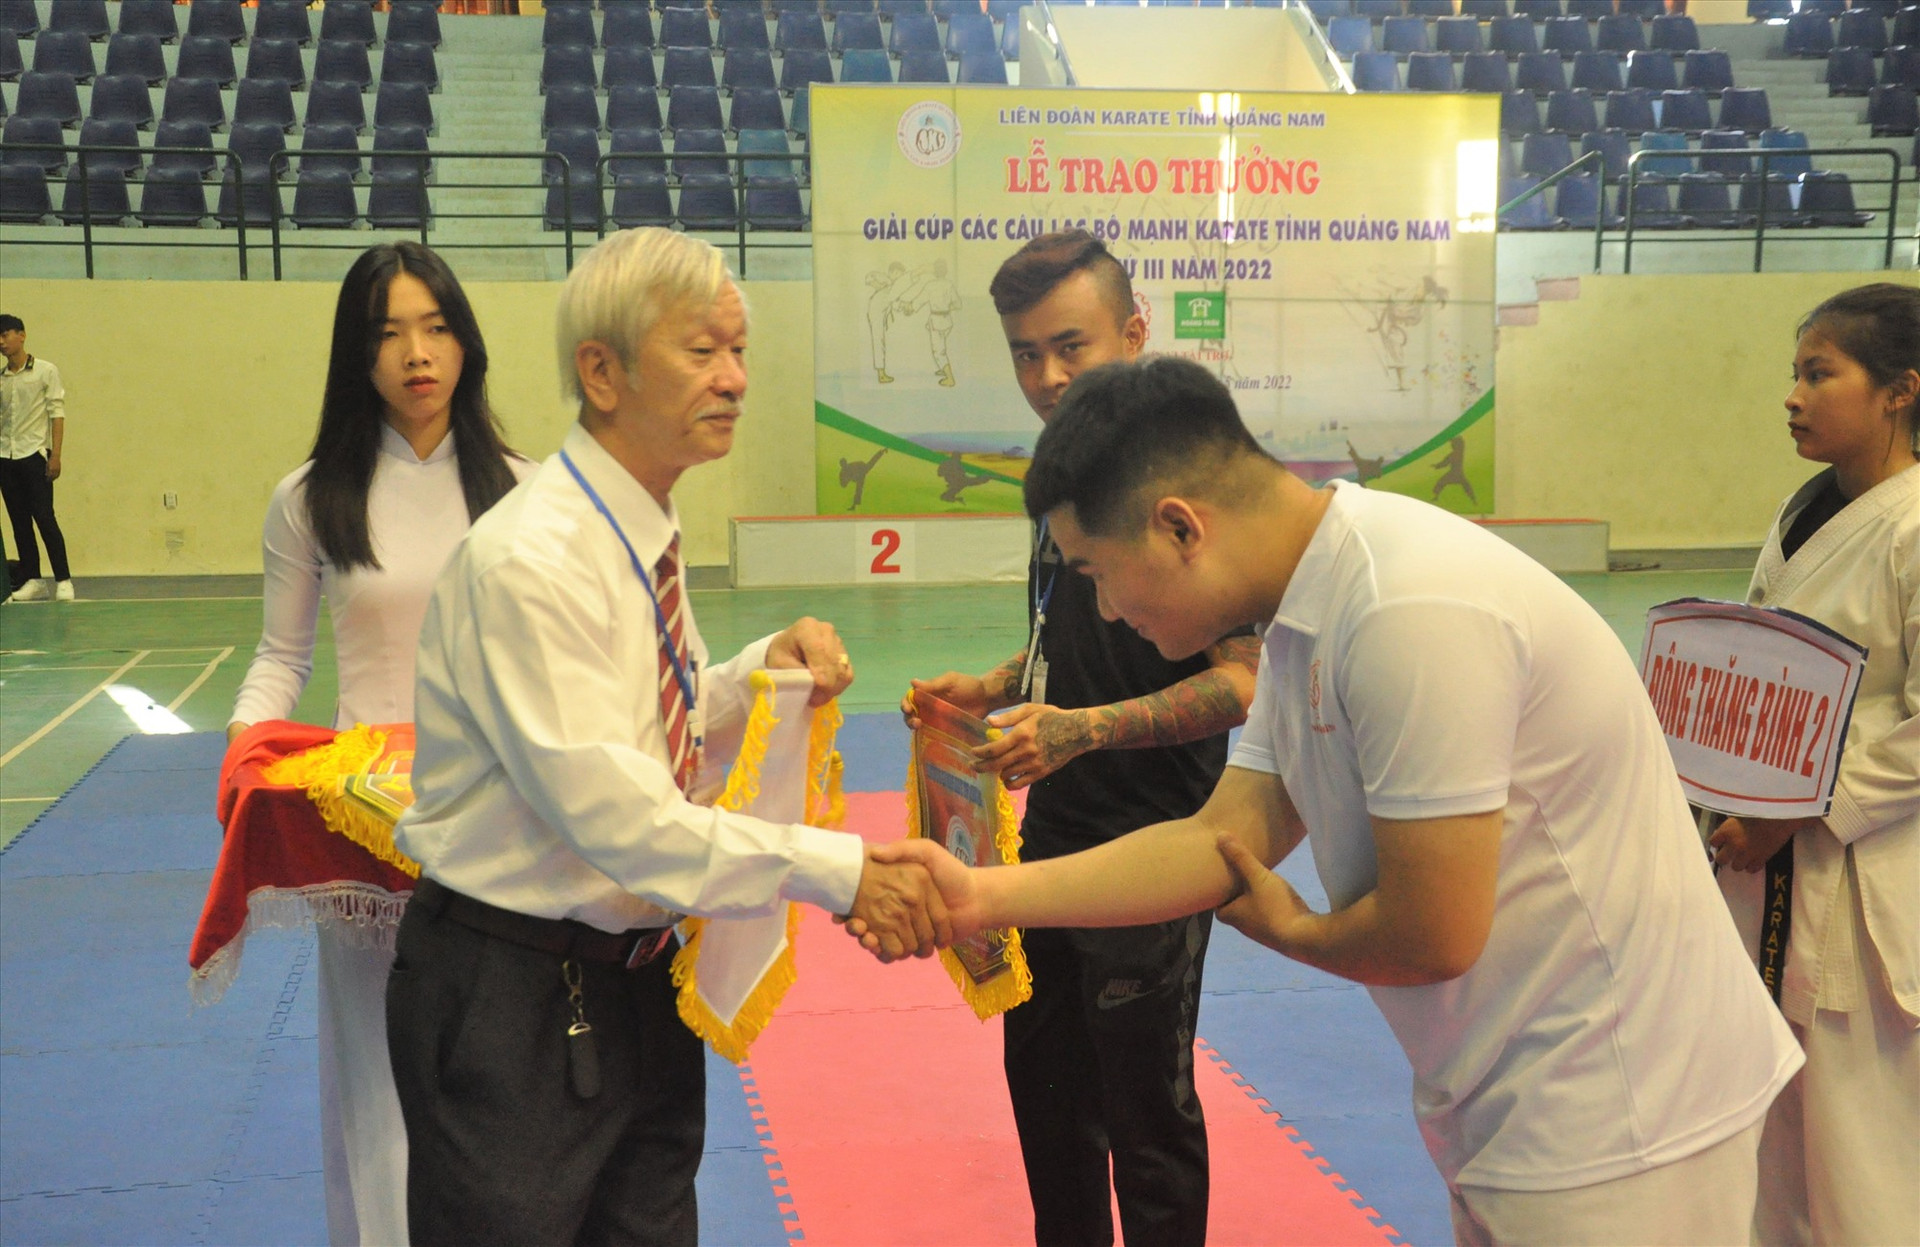 Dưới sự lèo léo của ông Nguyễn Thành Tự, Liên đoàn Karate tỉnh Quảng Nam để lại dấu ấn với nhiều hoạt động bổ ích đối với phong trào. Ảnh: T.V